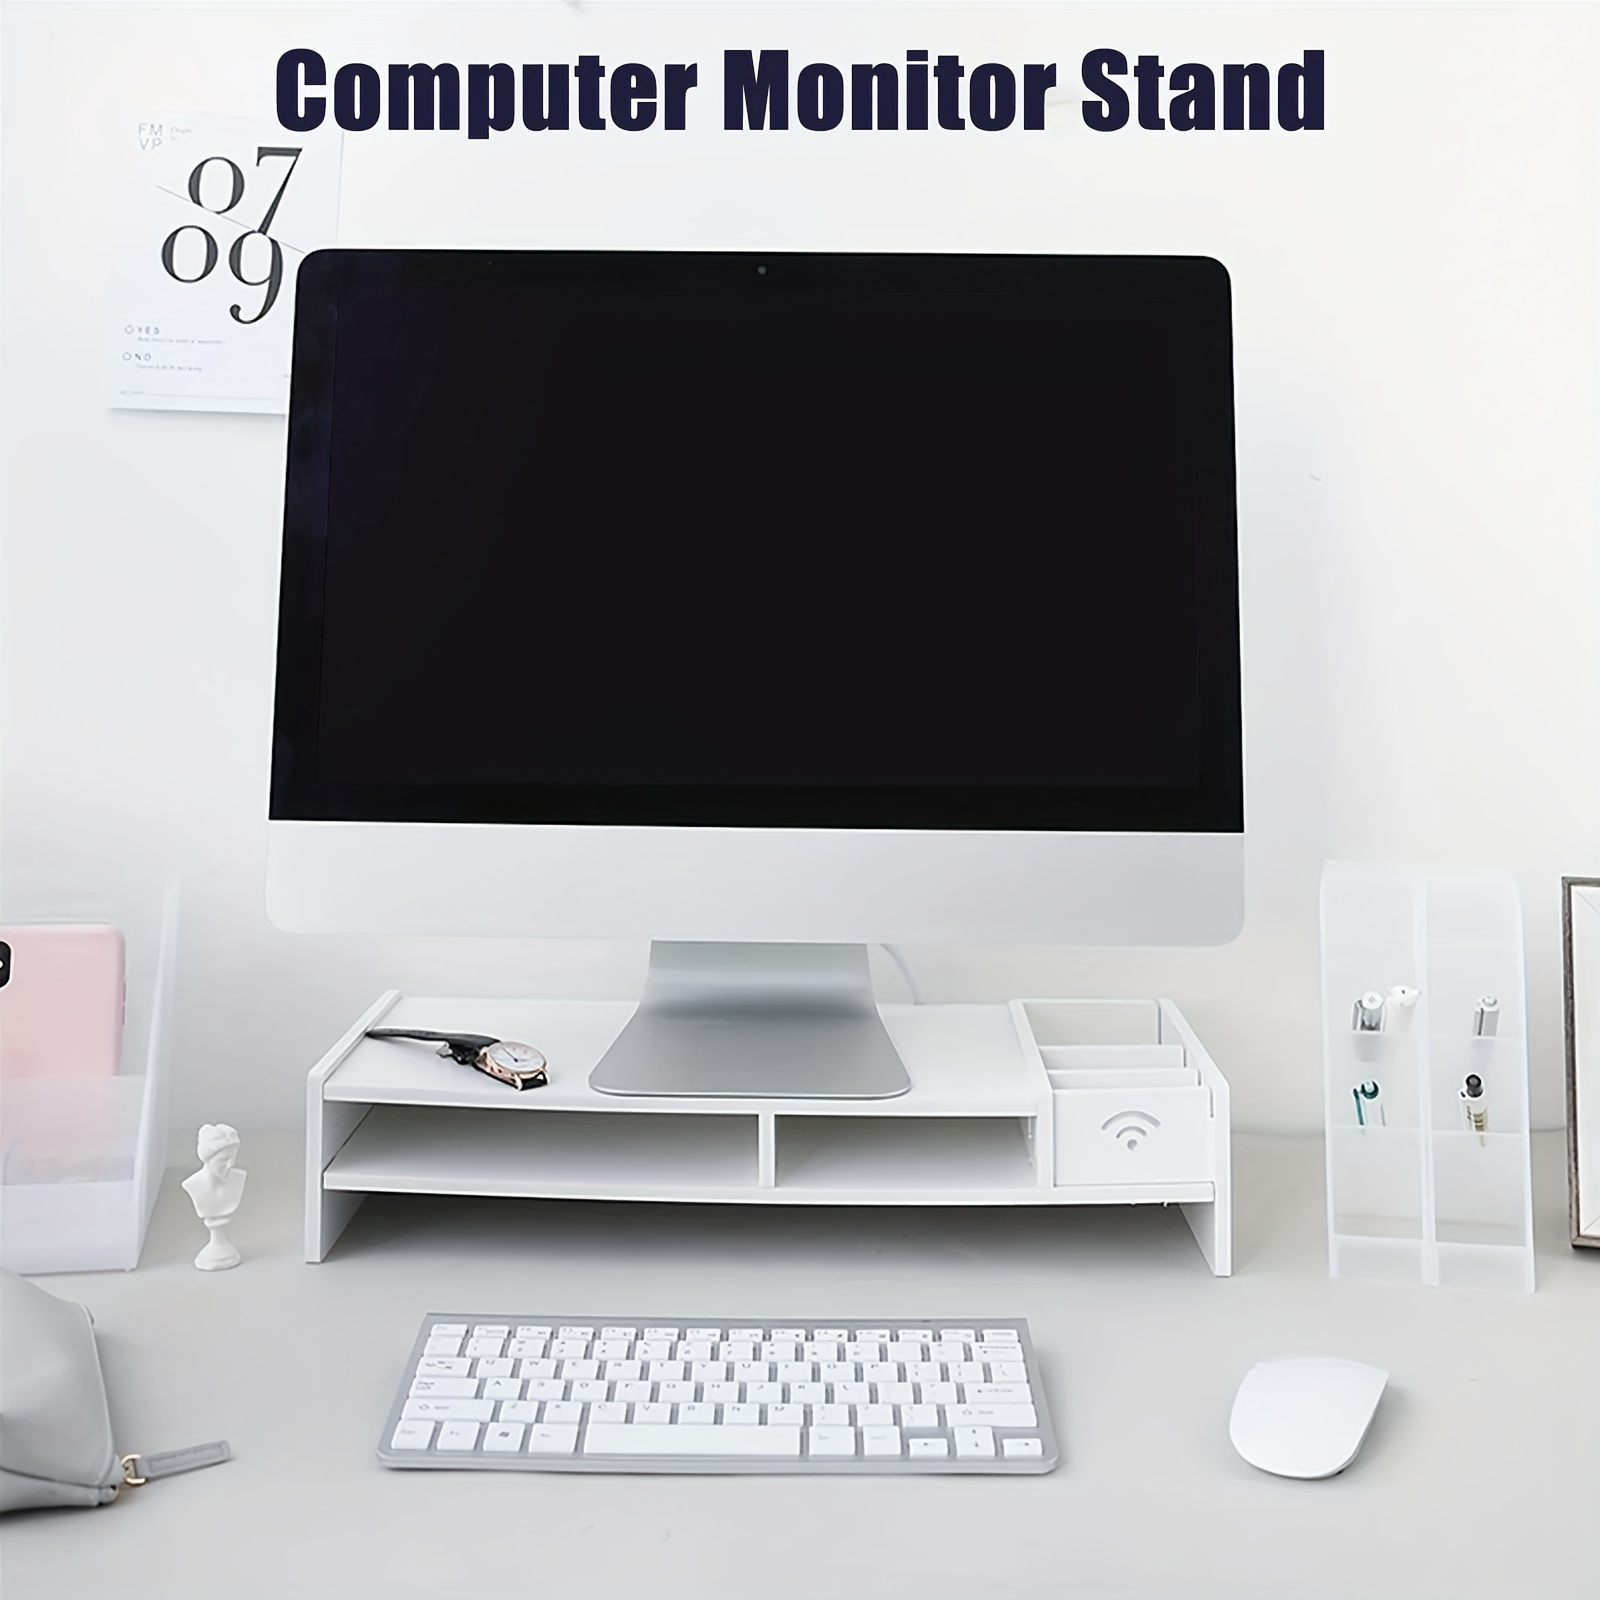 Soporte para monitor de madera con organizador de escritorio para …   Organizador de escritorio de madera, Decoración de escritorio de oficina, Escritorio  de madera